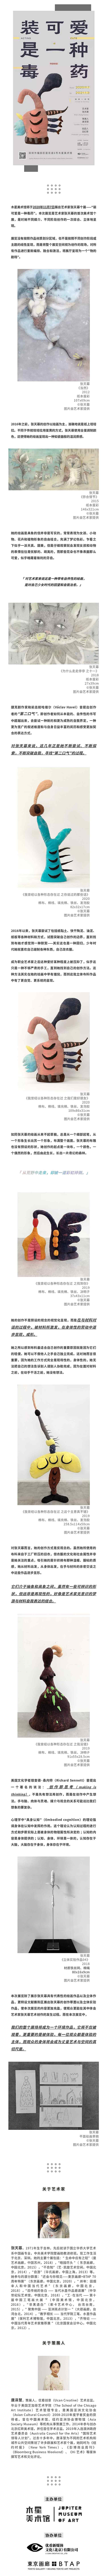 装可爱是一种毒药-预约报名-深圳市木星美术馆活动-活动行_WPS图片.jpg